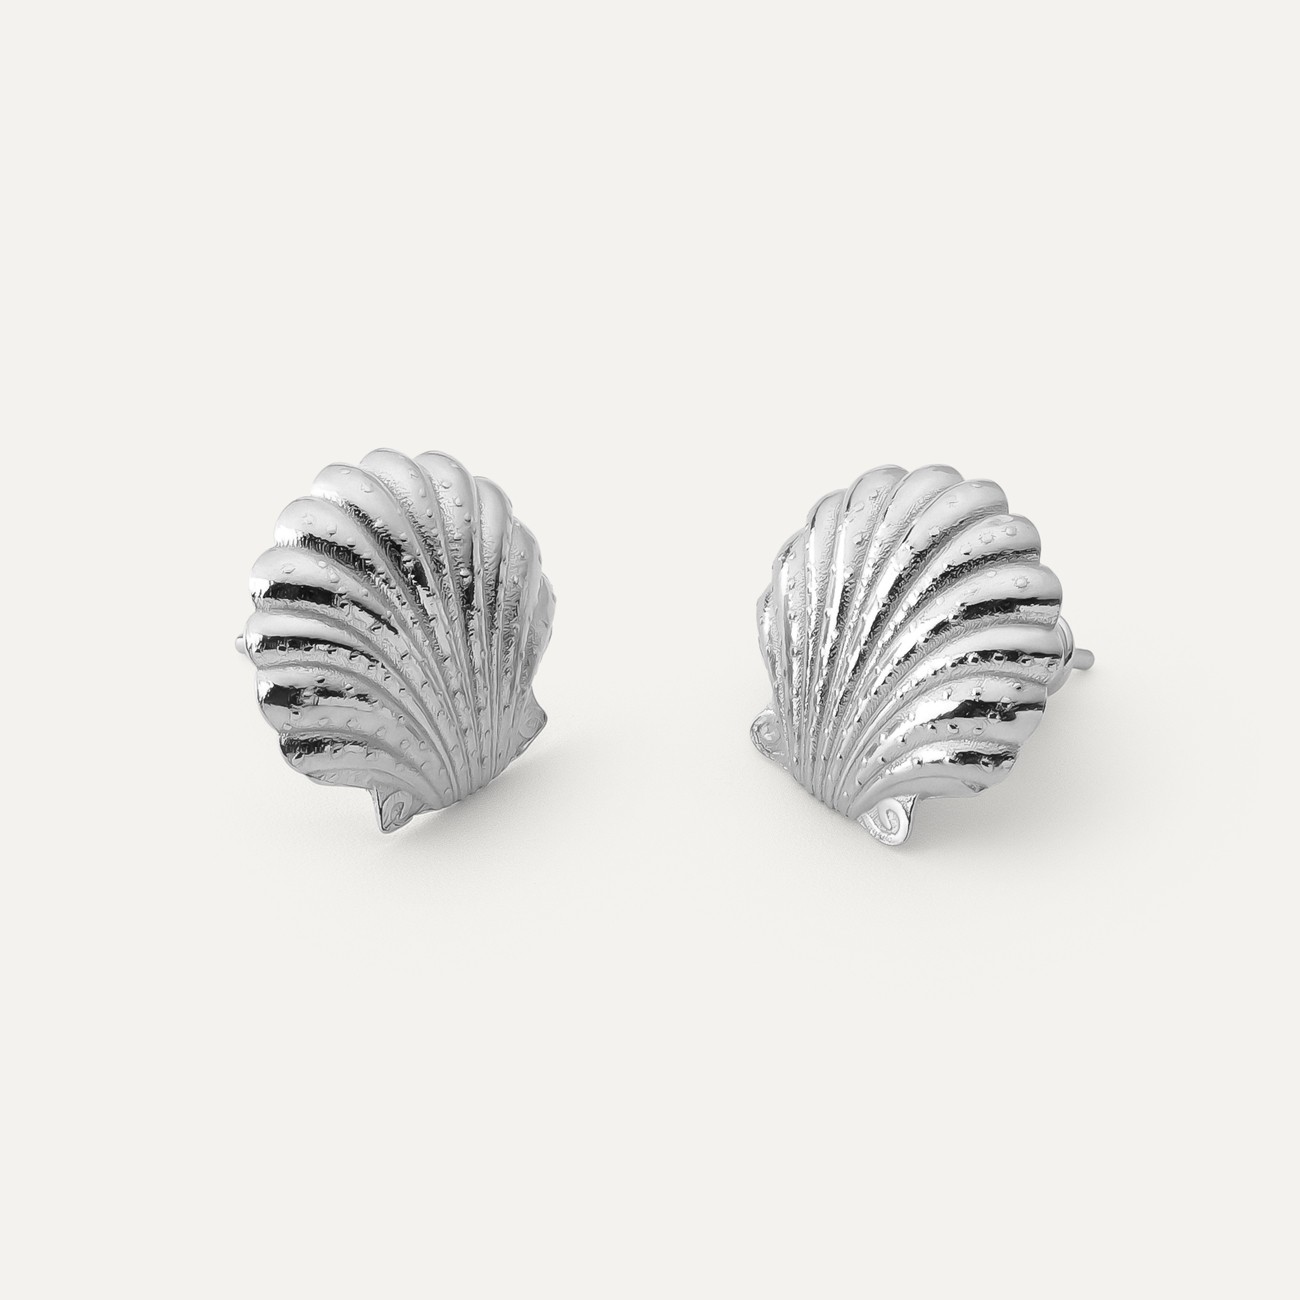 Seashell earrings, sterling silver 925